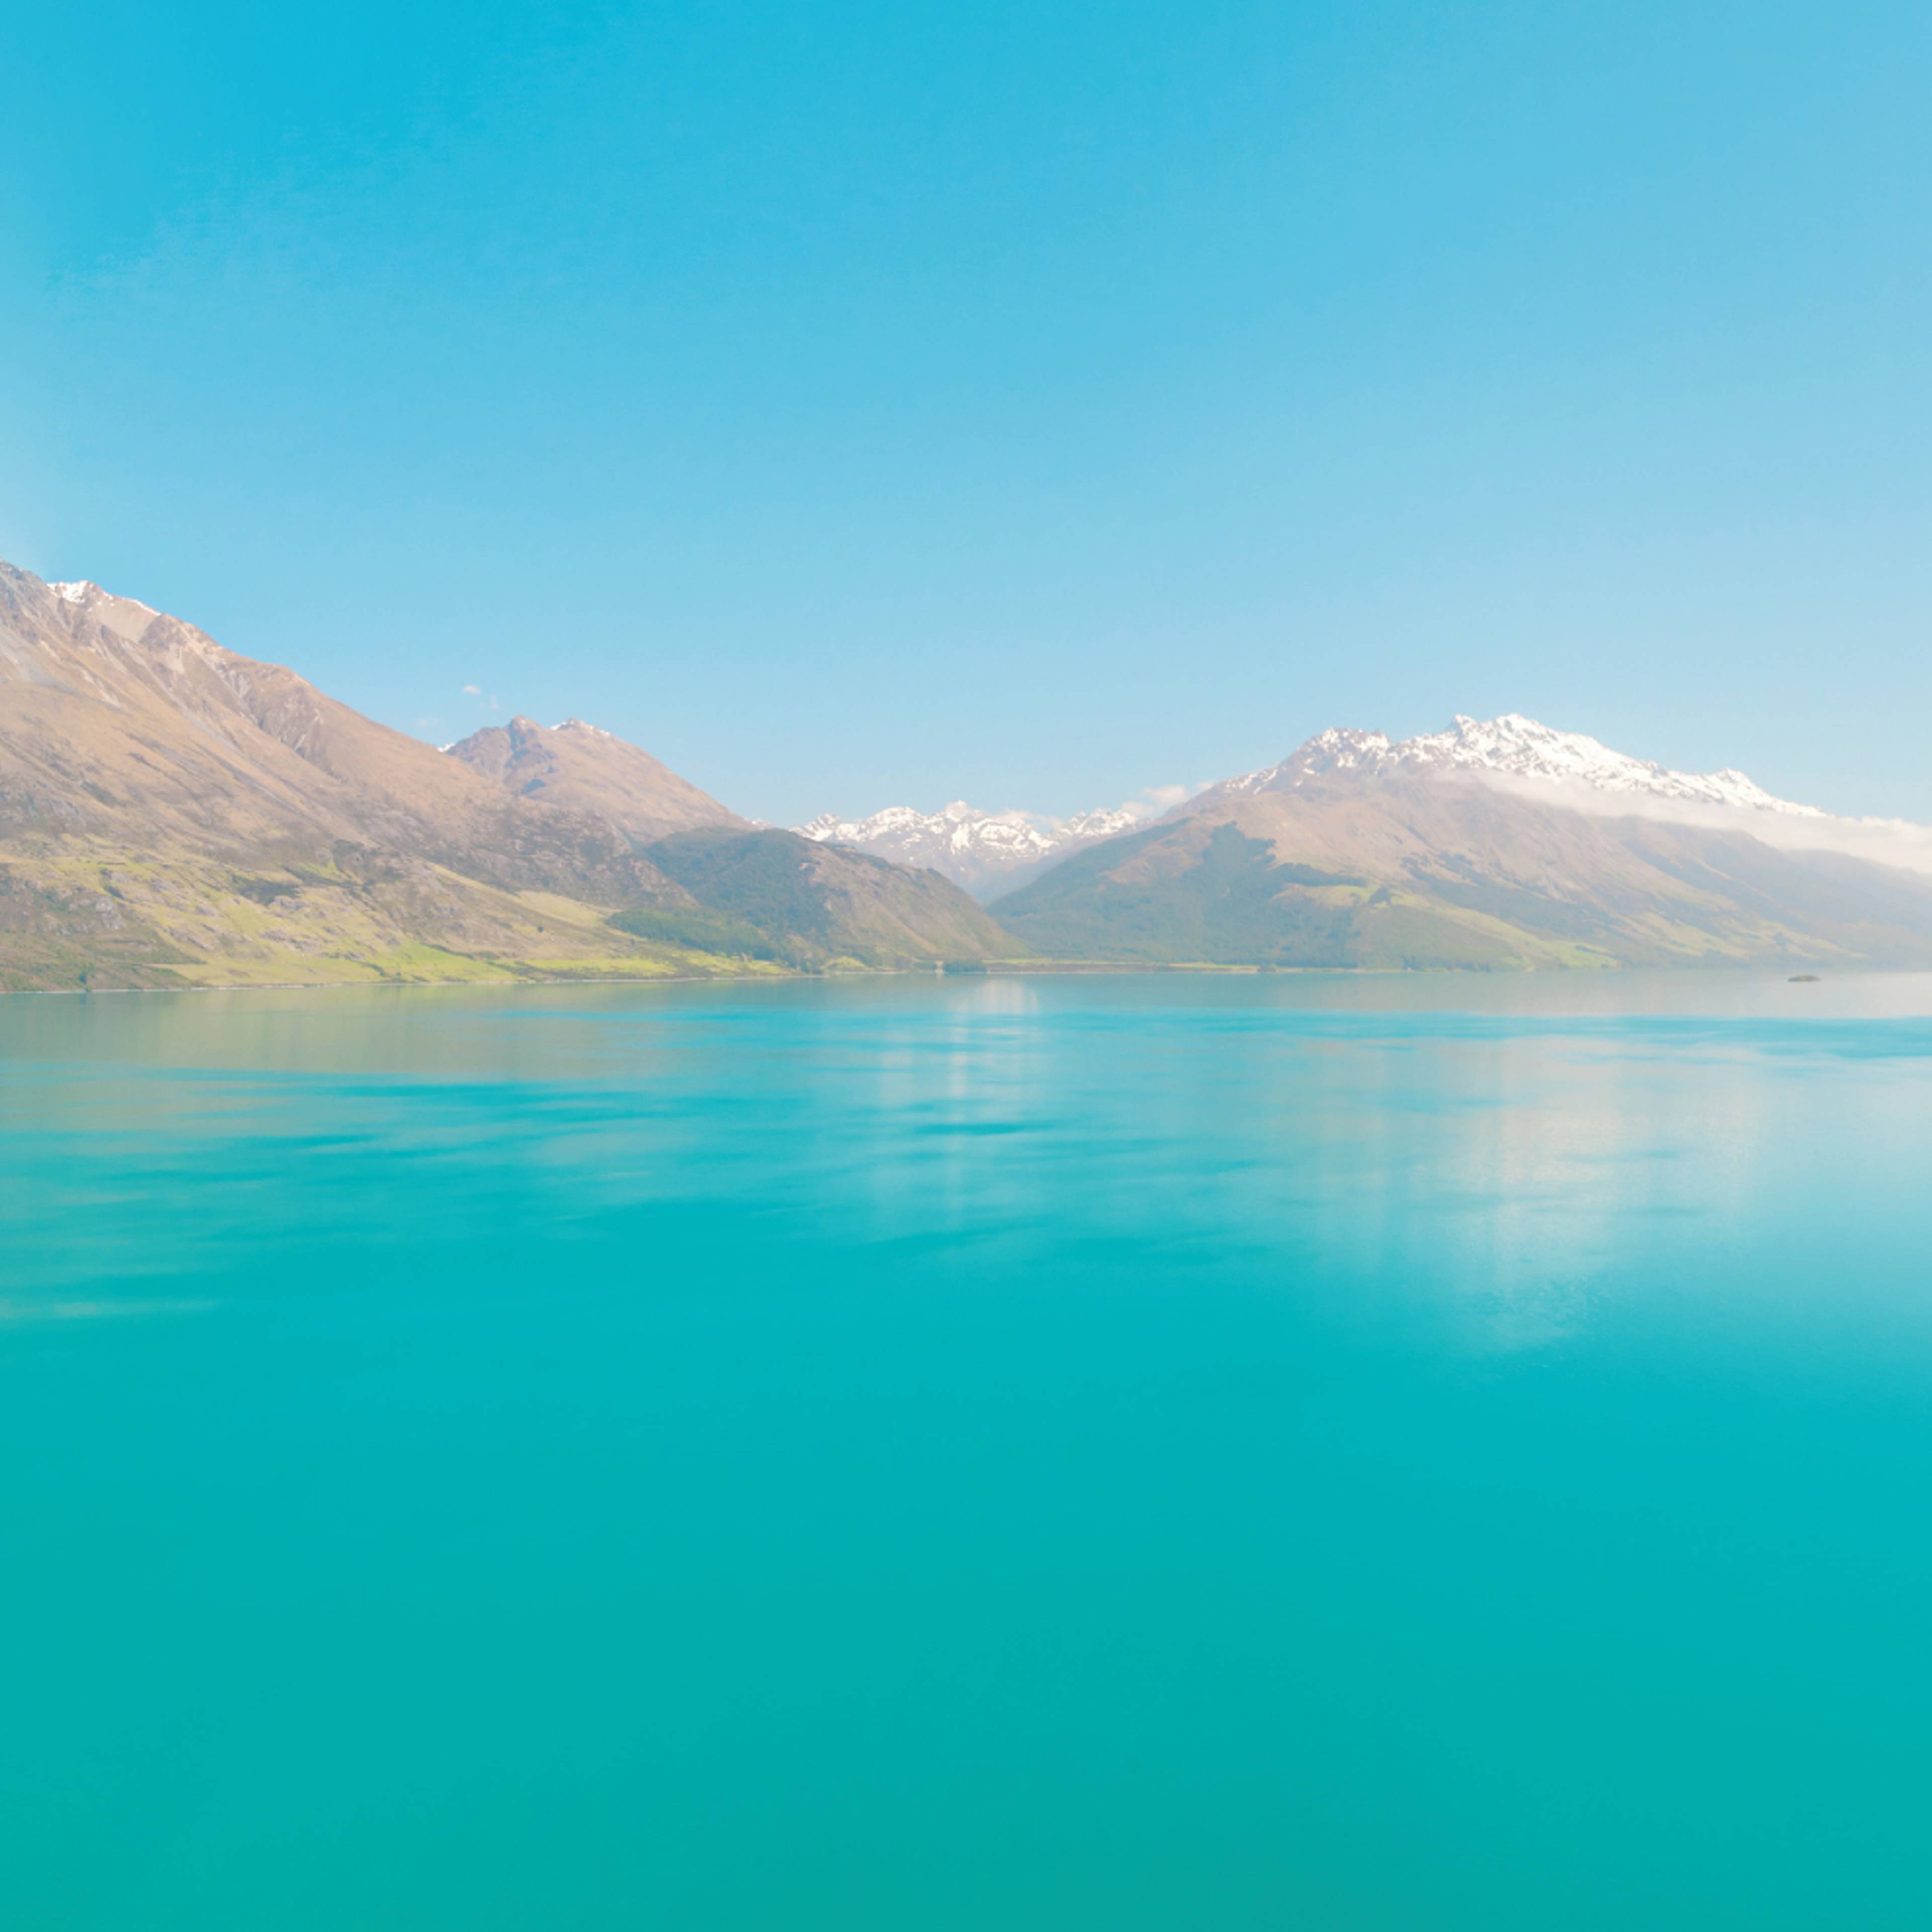 Crea il tuo viaggio in Nuova Zelanda in estate, 100% su misura